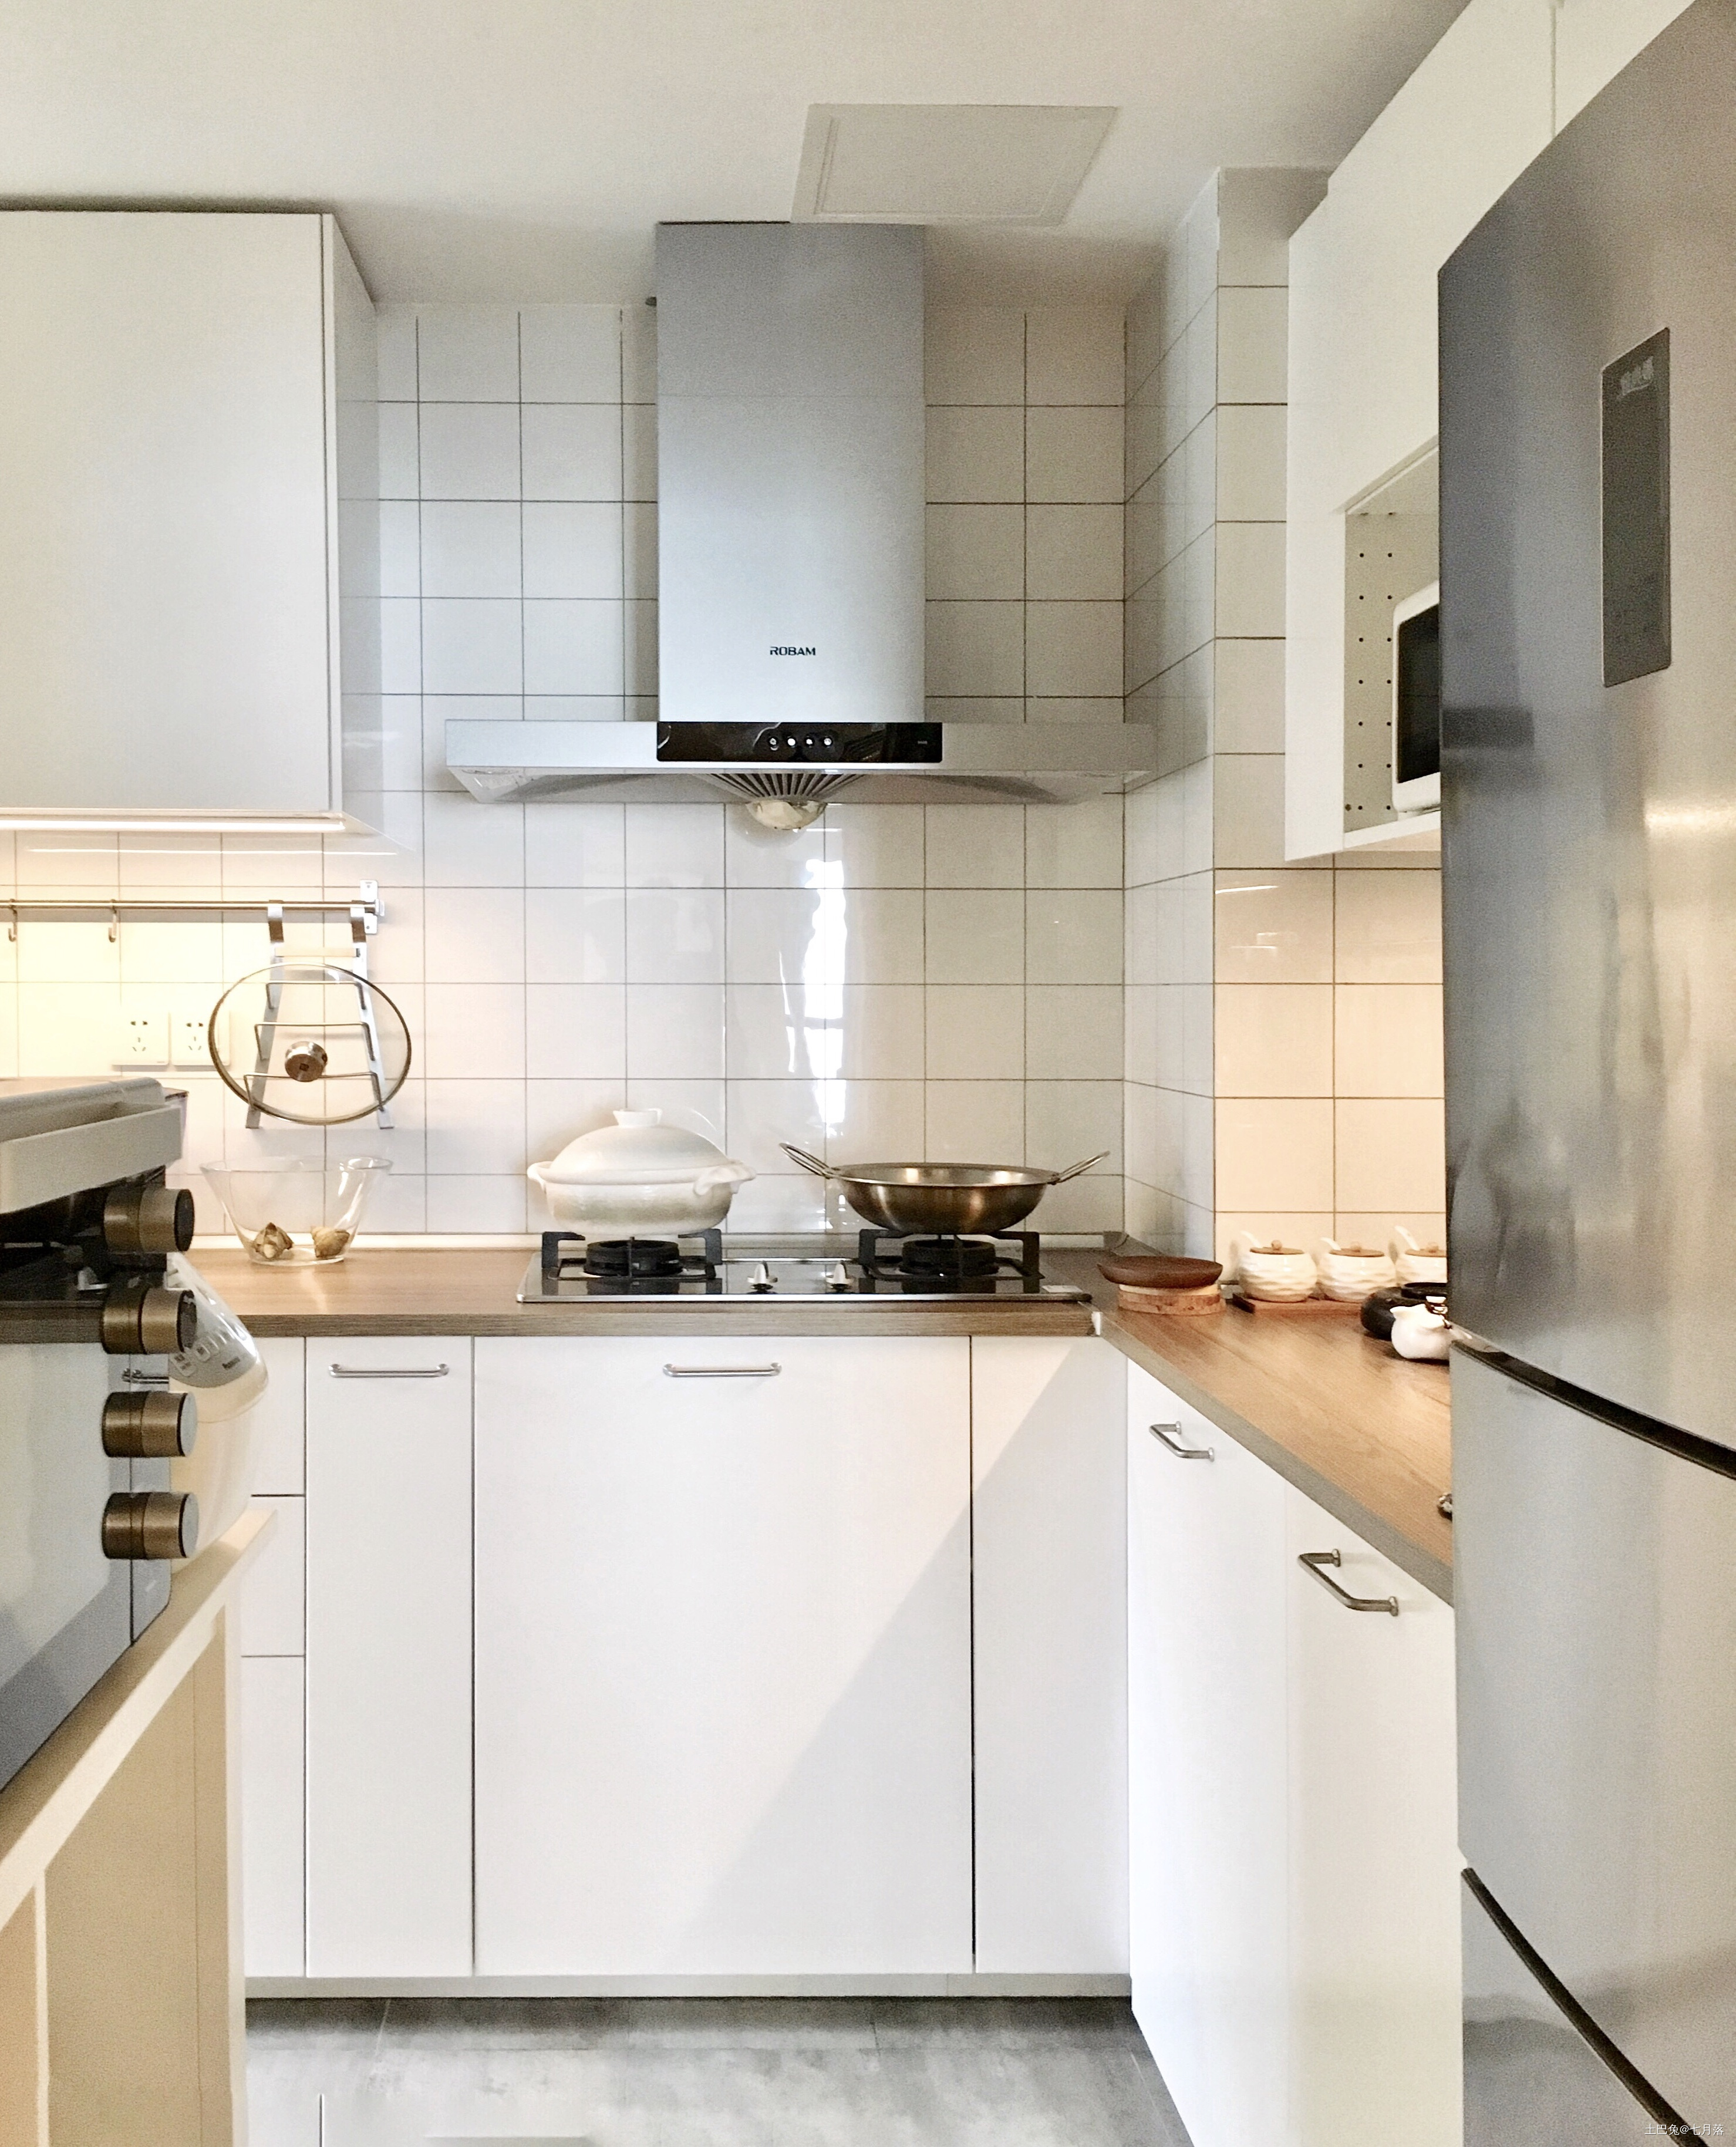 悠雅94平中式三居厨房装修装饰图新中式厨房设计图片赏析